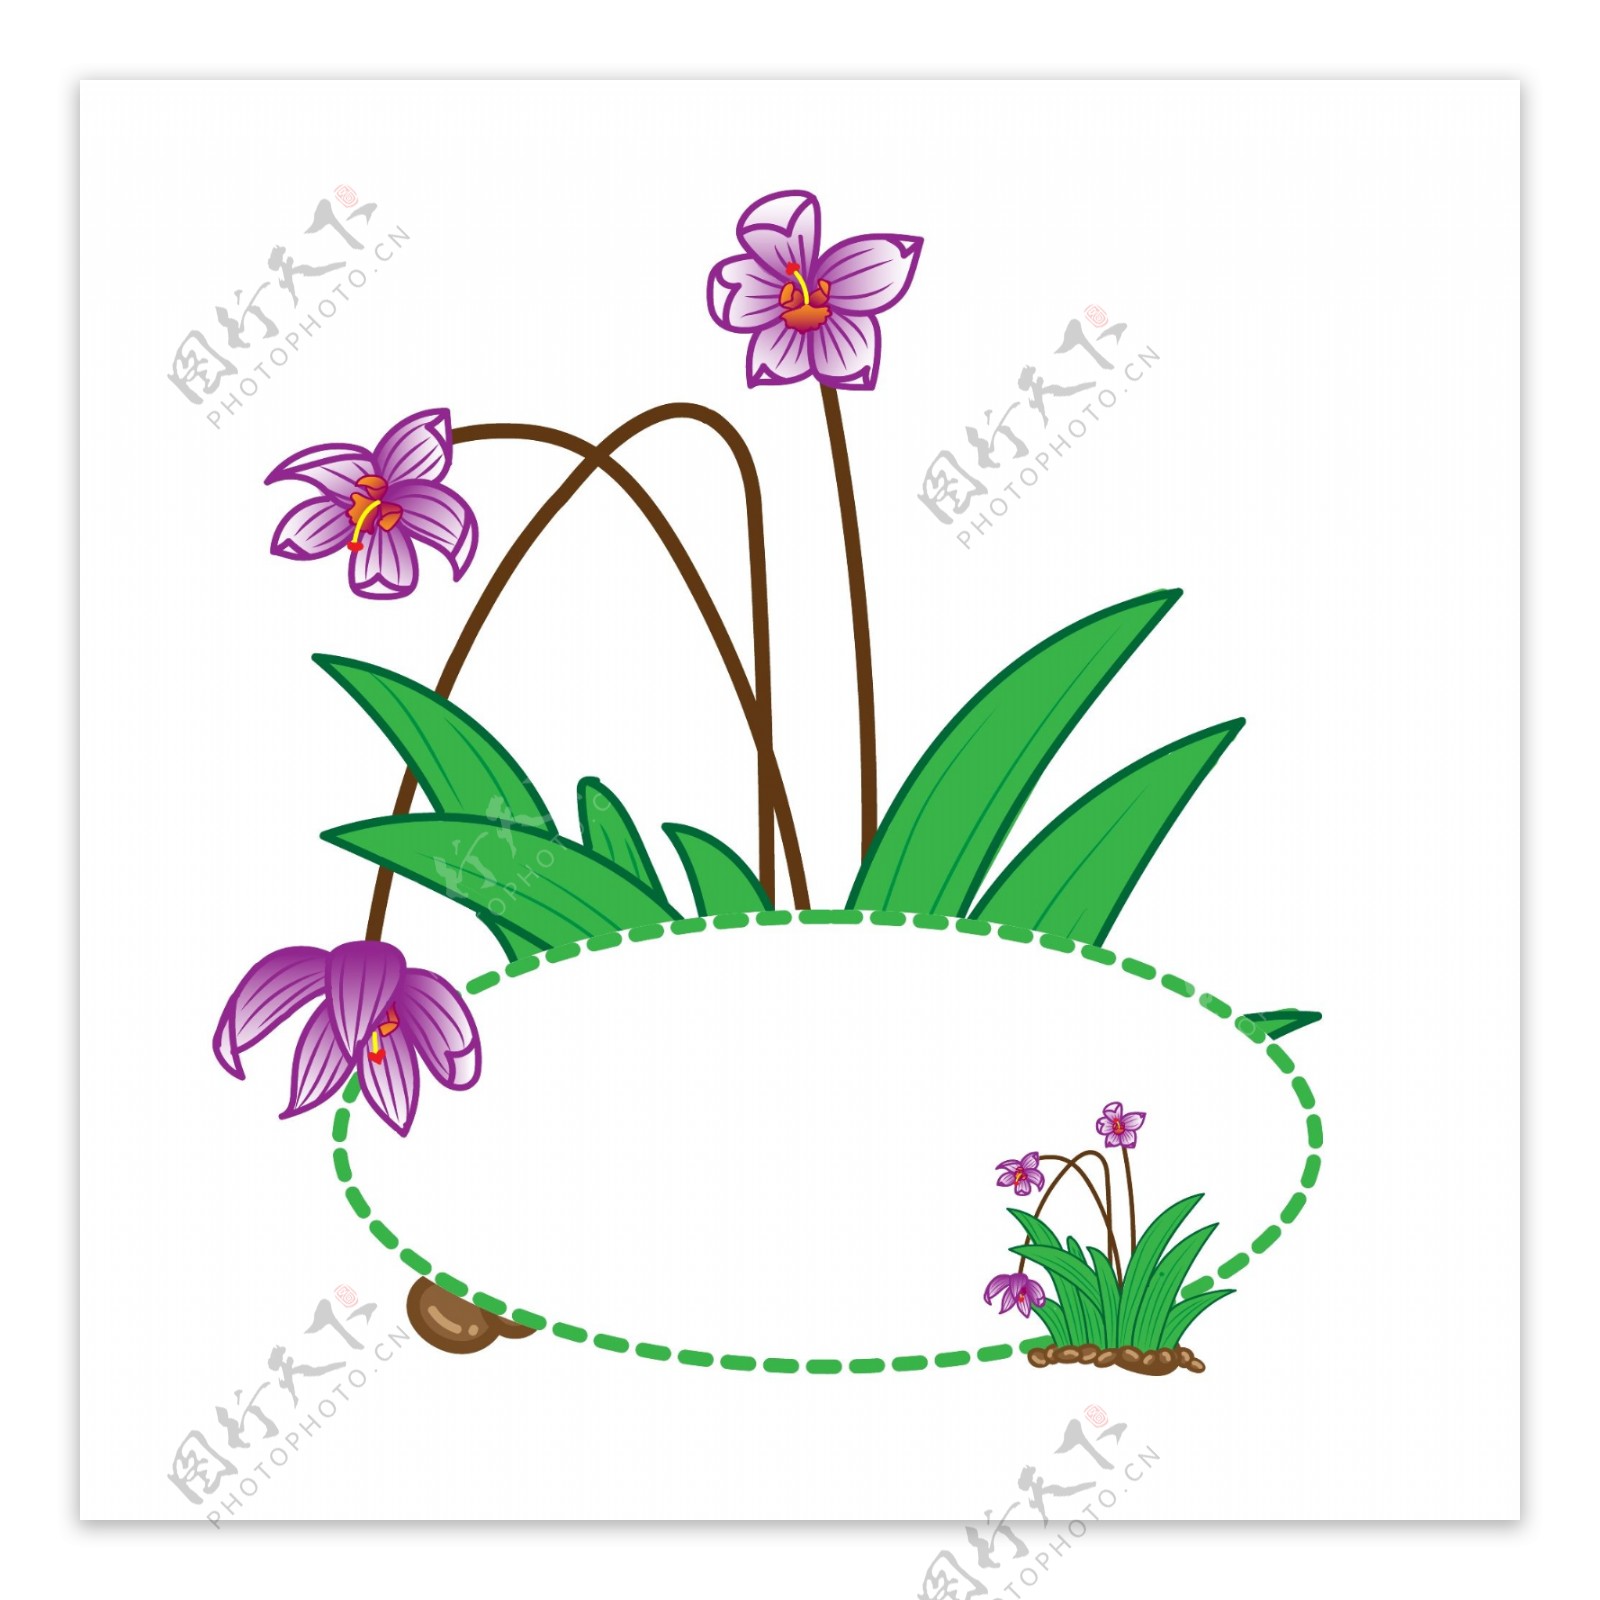 矢量兰花植物边框可商用插画元素